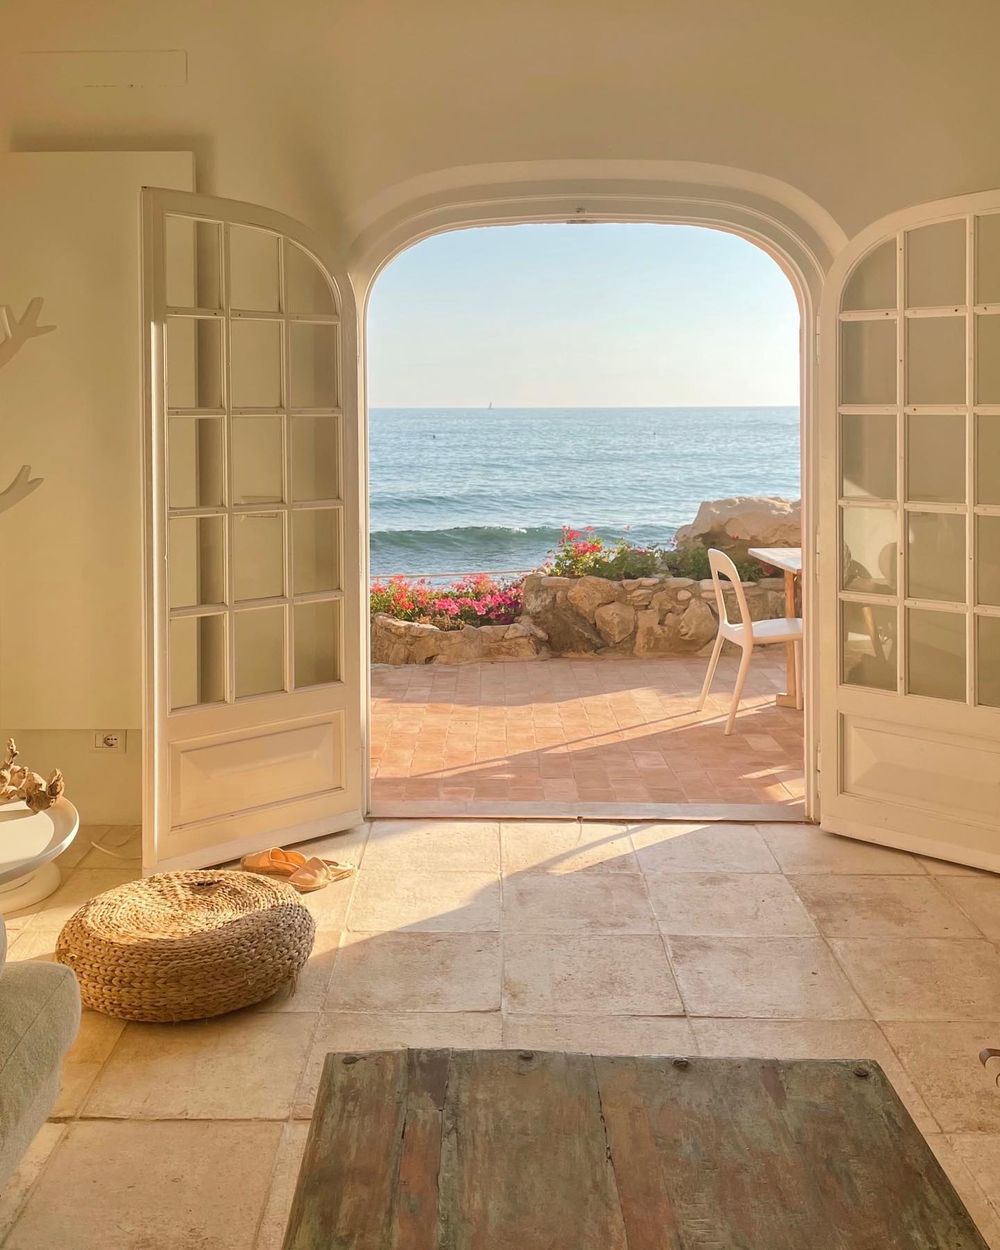 Mediterranean decor French doorway @valentinabarabuffi